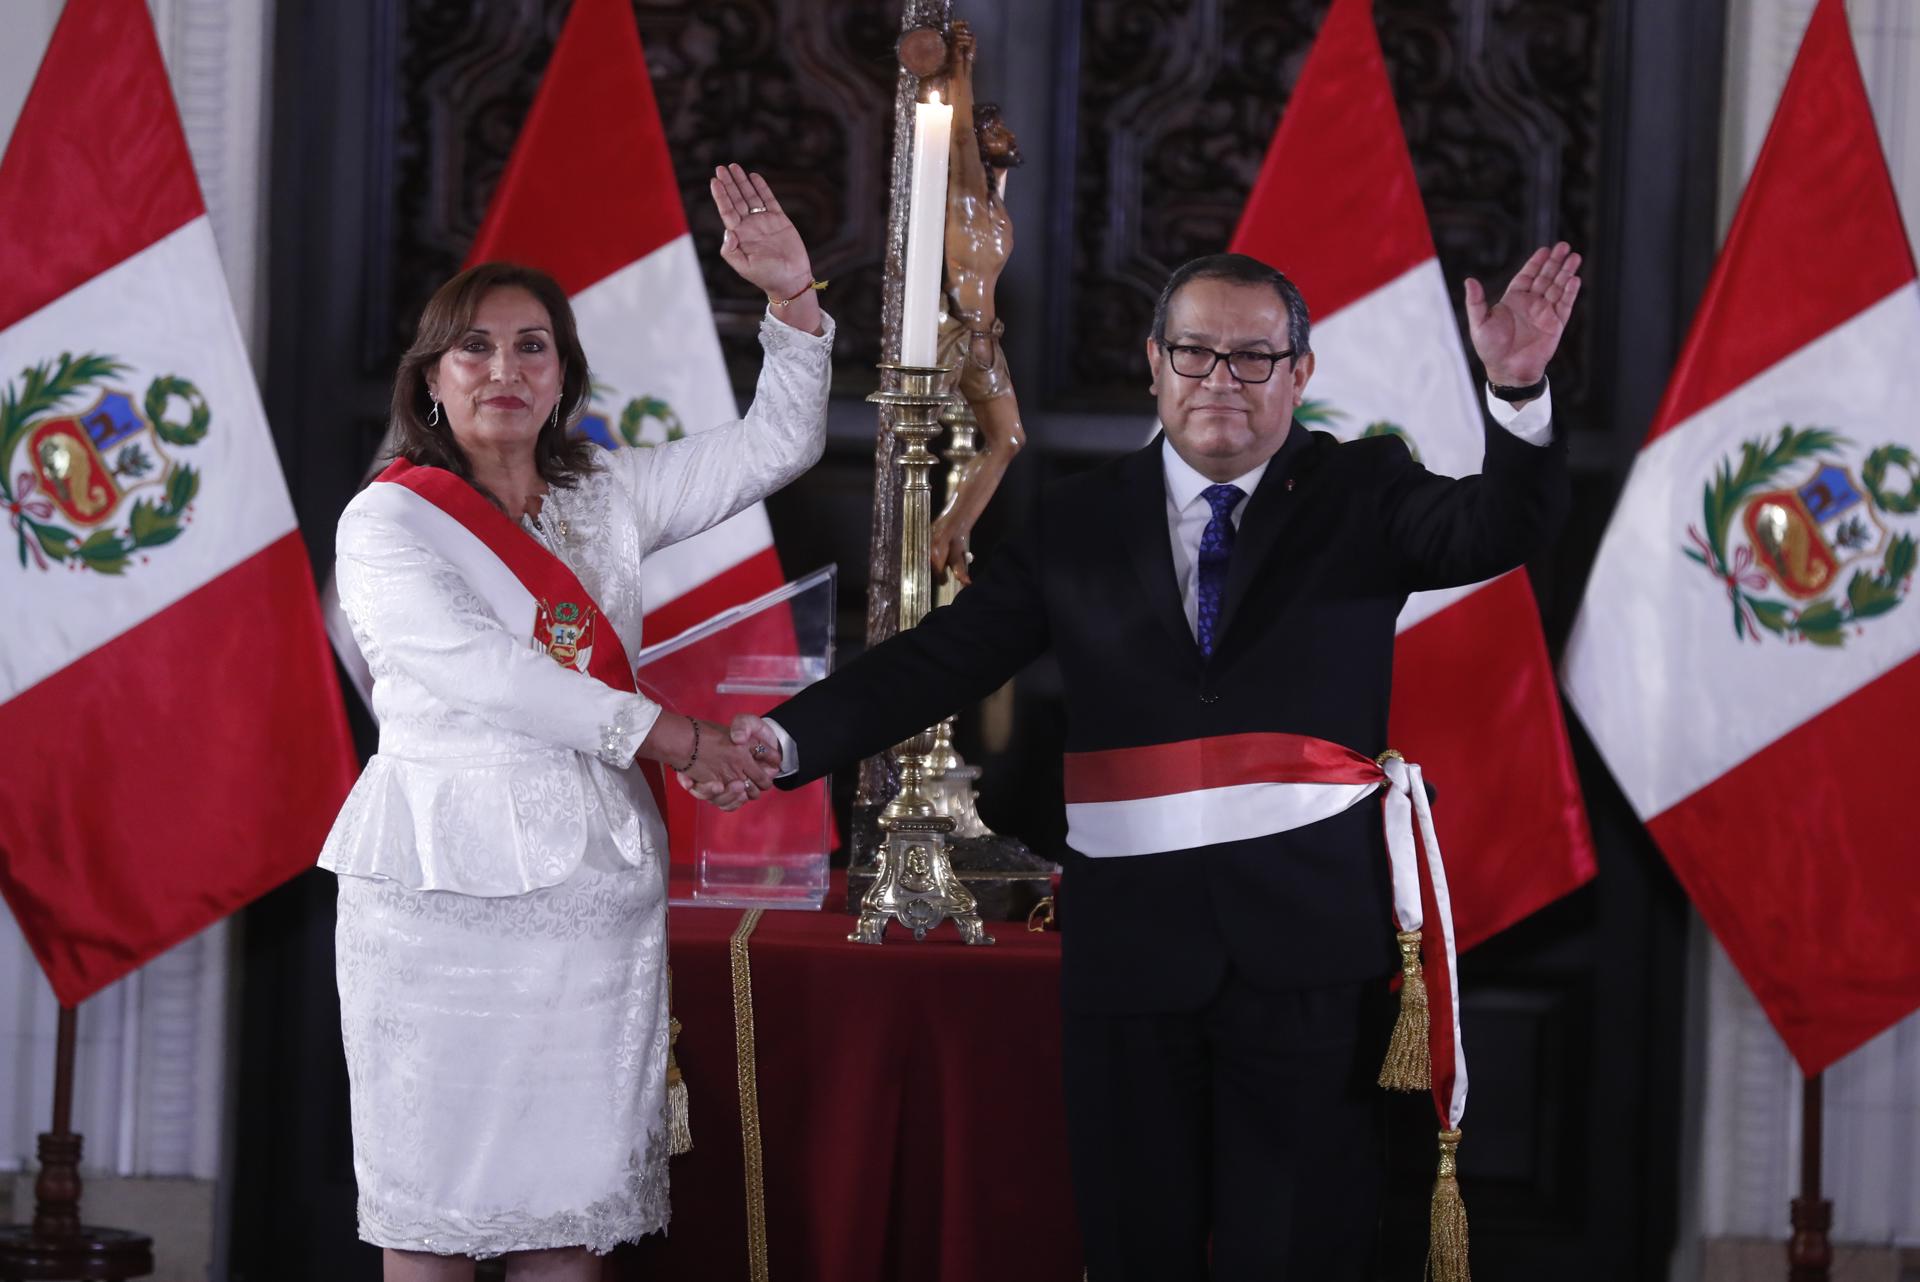 El Gobierno de Perú planteará que presidentes sean destituidos por corrupción